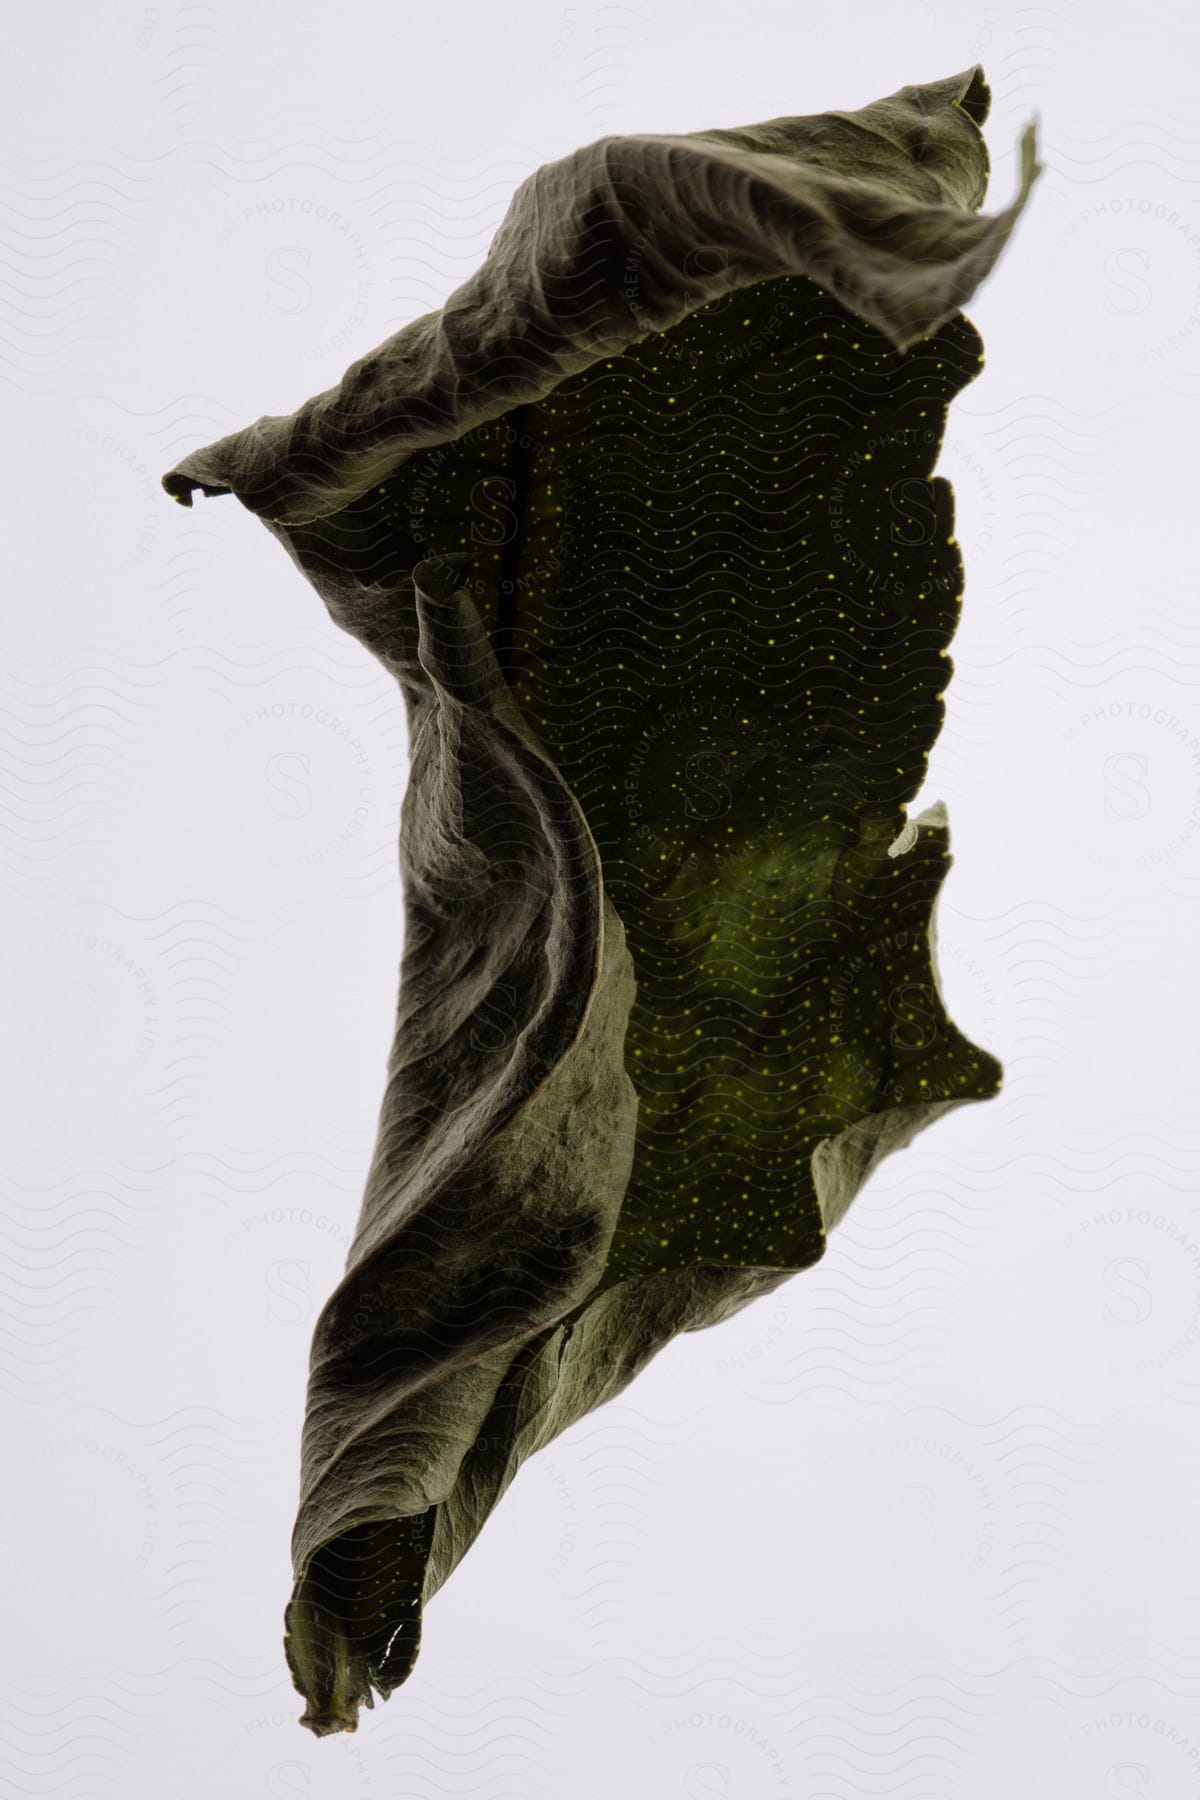 A dry herbal leaf is curling